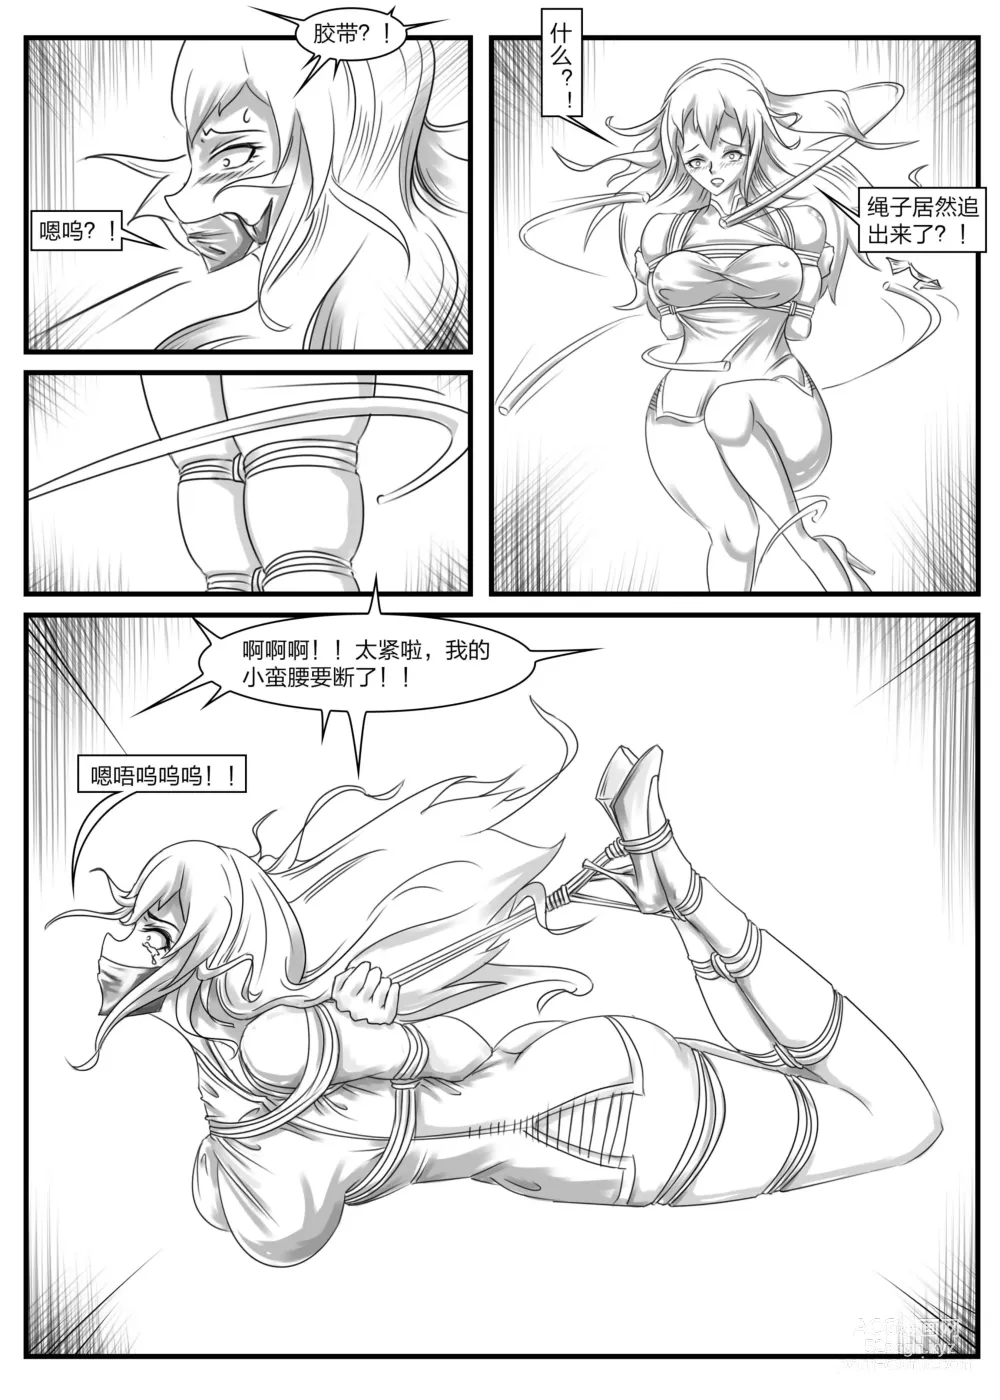 Page 6 of doujinshi 《被困游戏世界2》